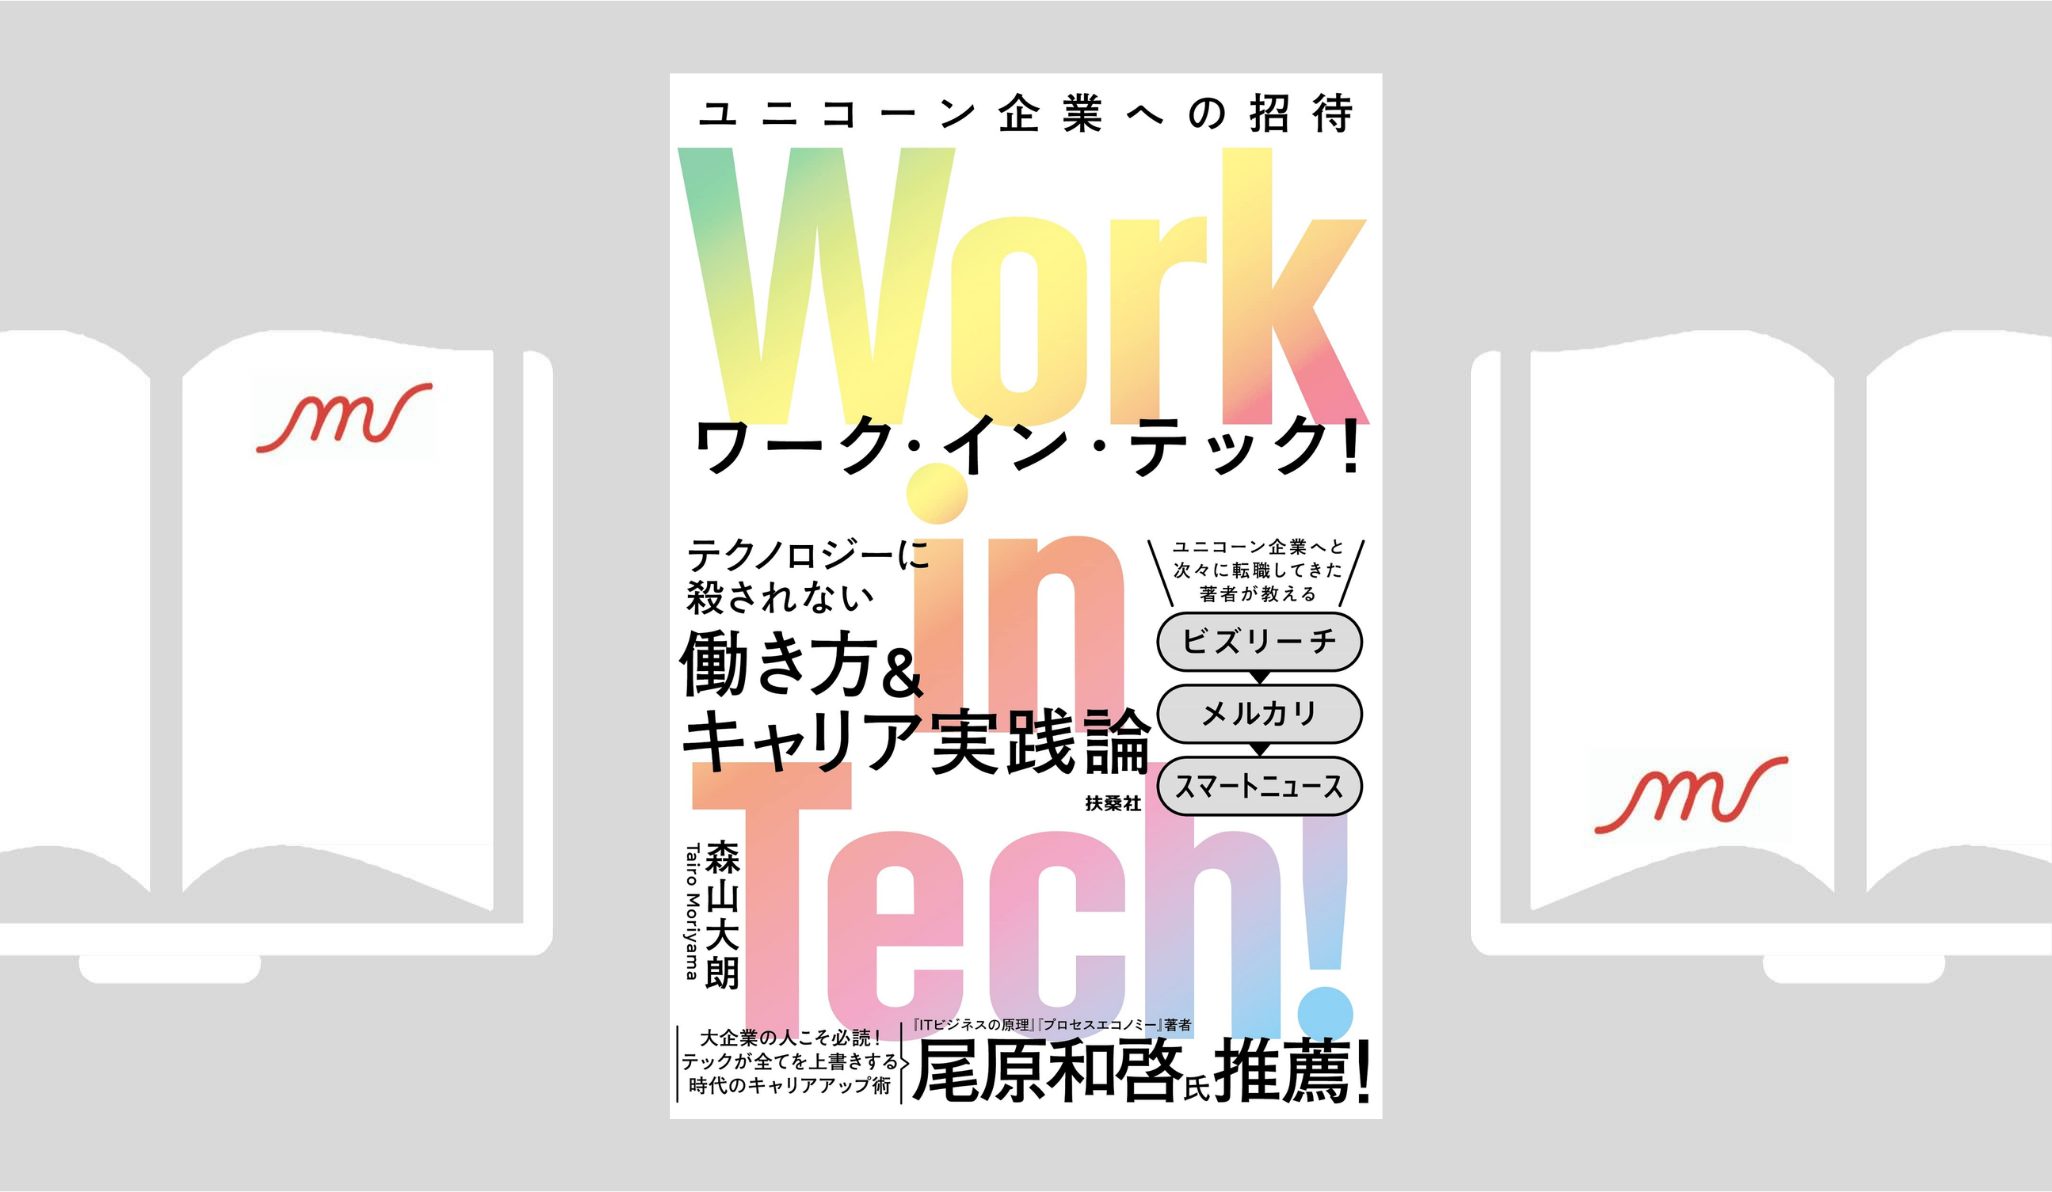 『Work in Tech!(ワーク・イン・テック!) ユニコーン企業への招待』森山 大朗